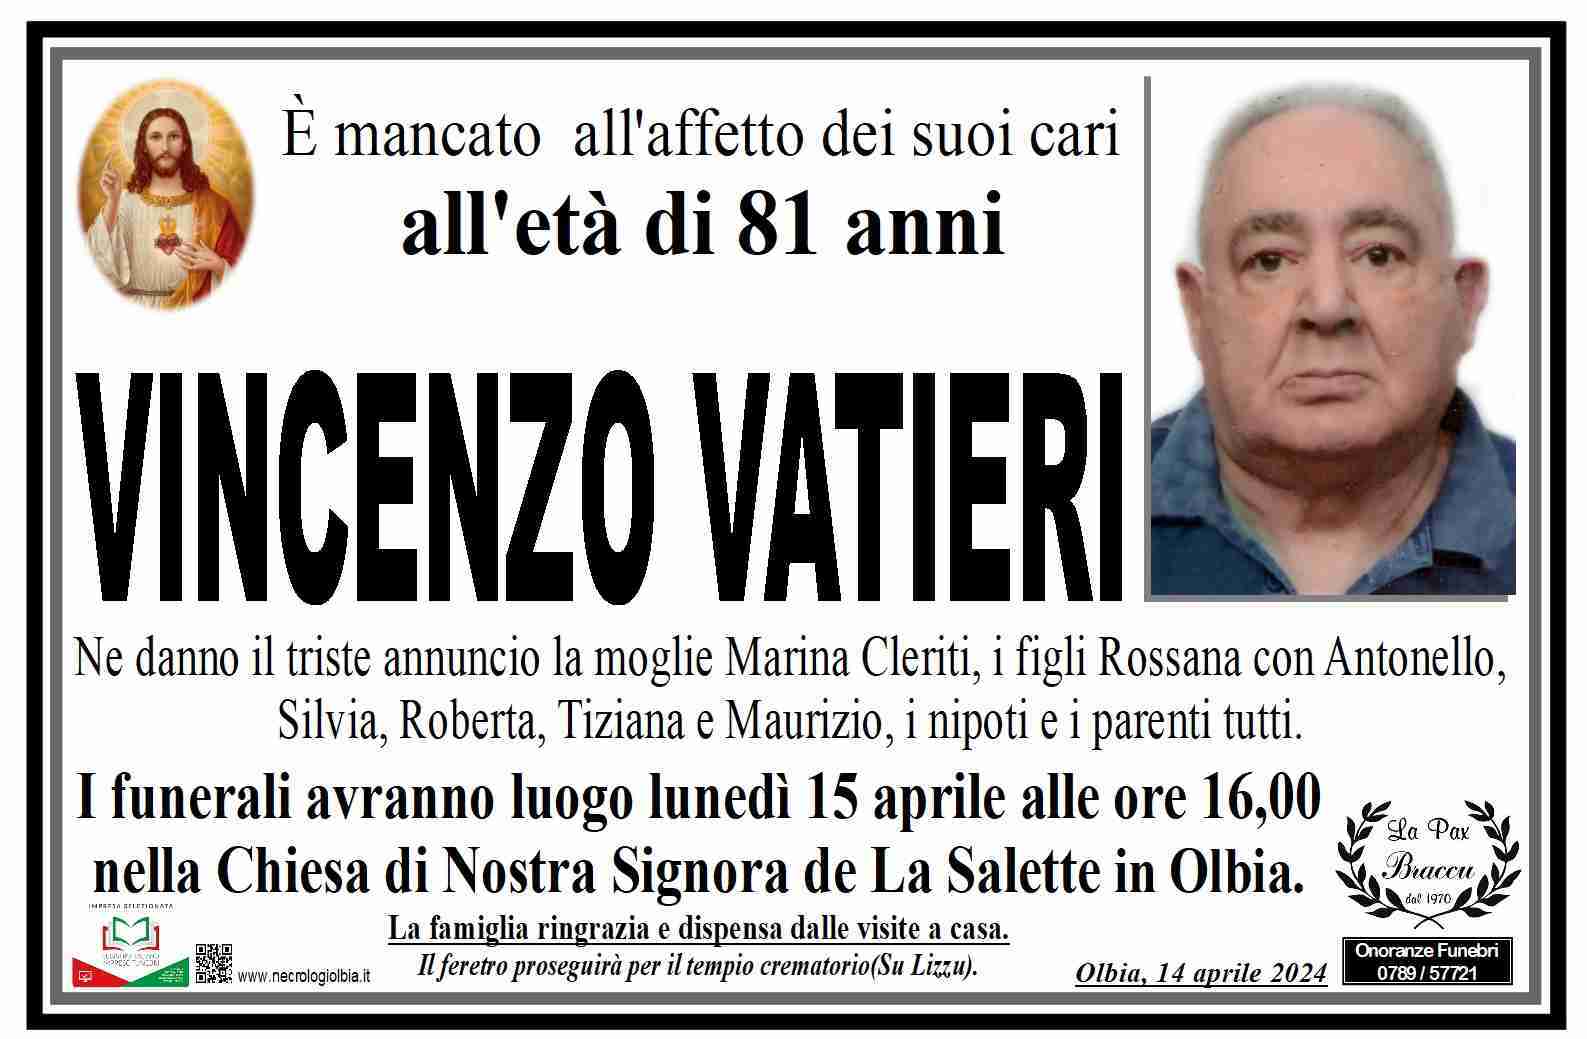 Vincenzo Vatieri